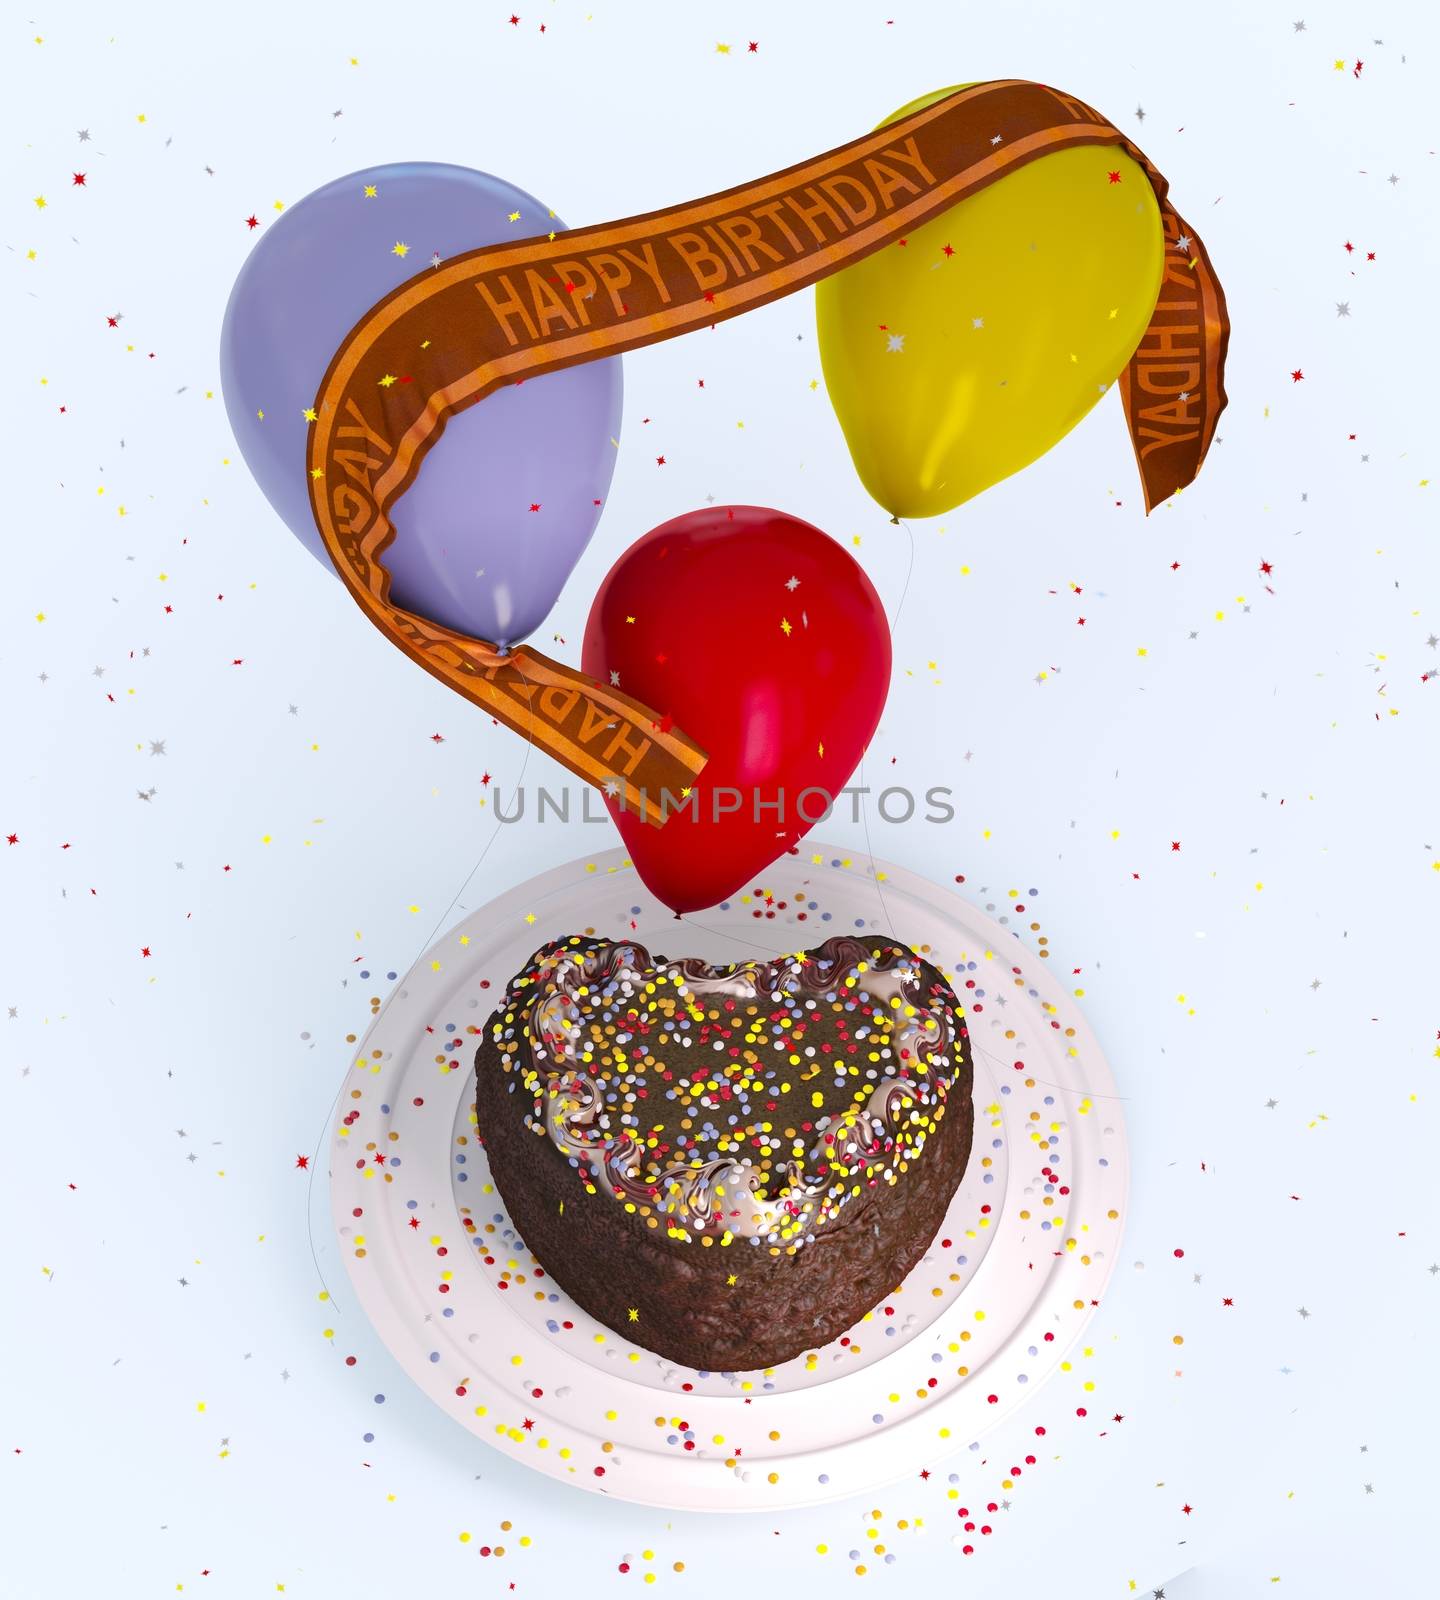 birthday decorative cake and balloons celebration background on isolate white